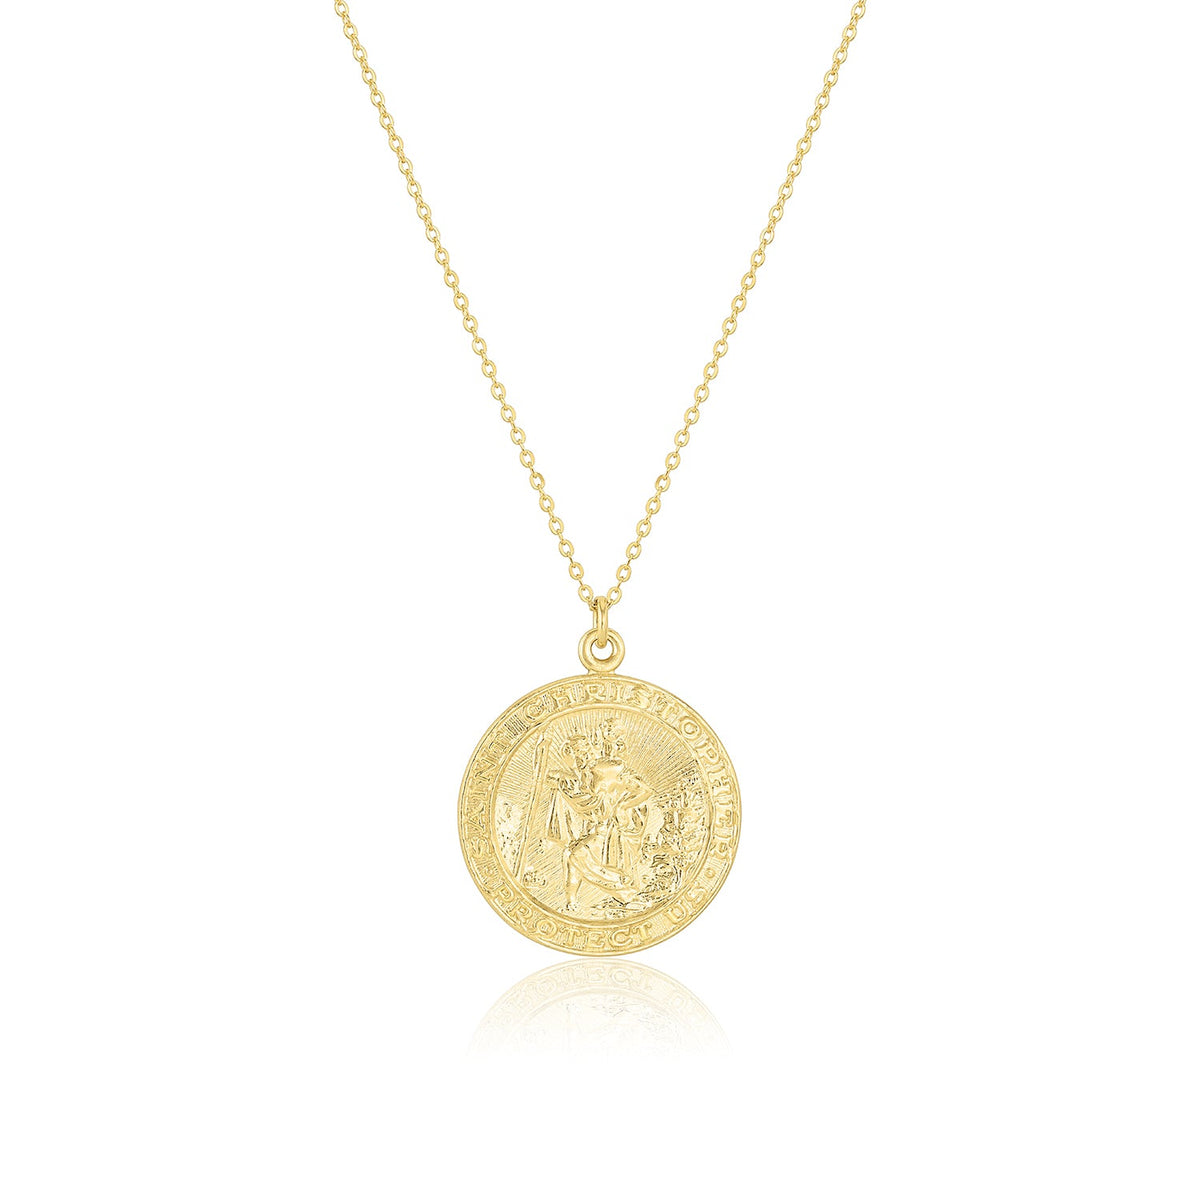 Set & Stones Saint Christopher Necklace 14k Gold Filled